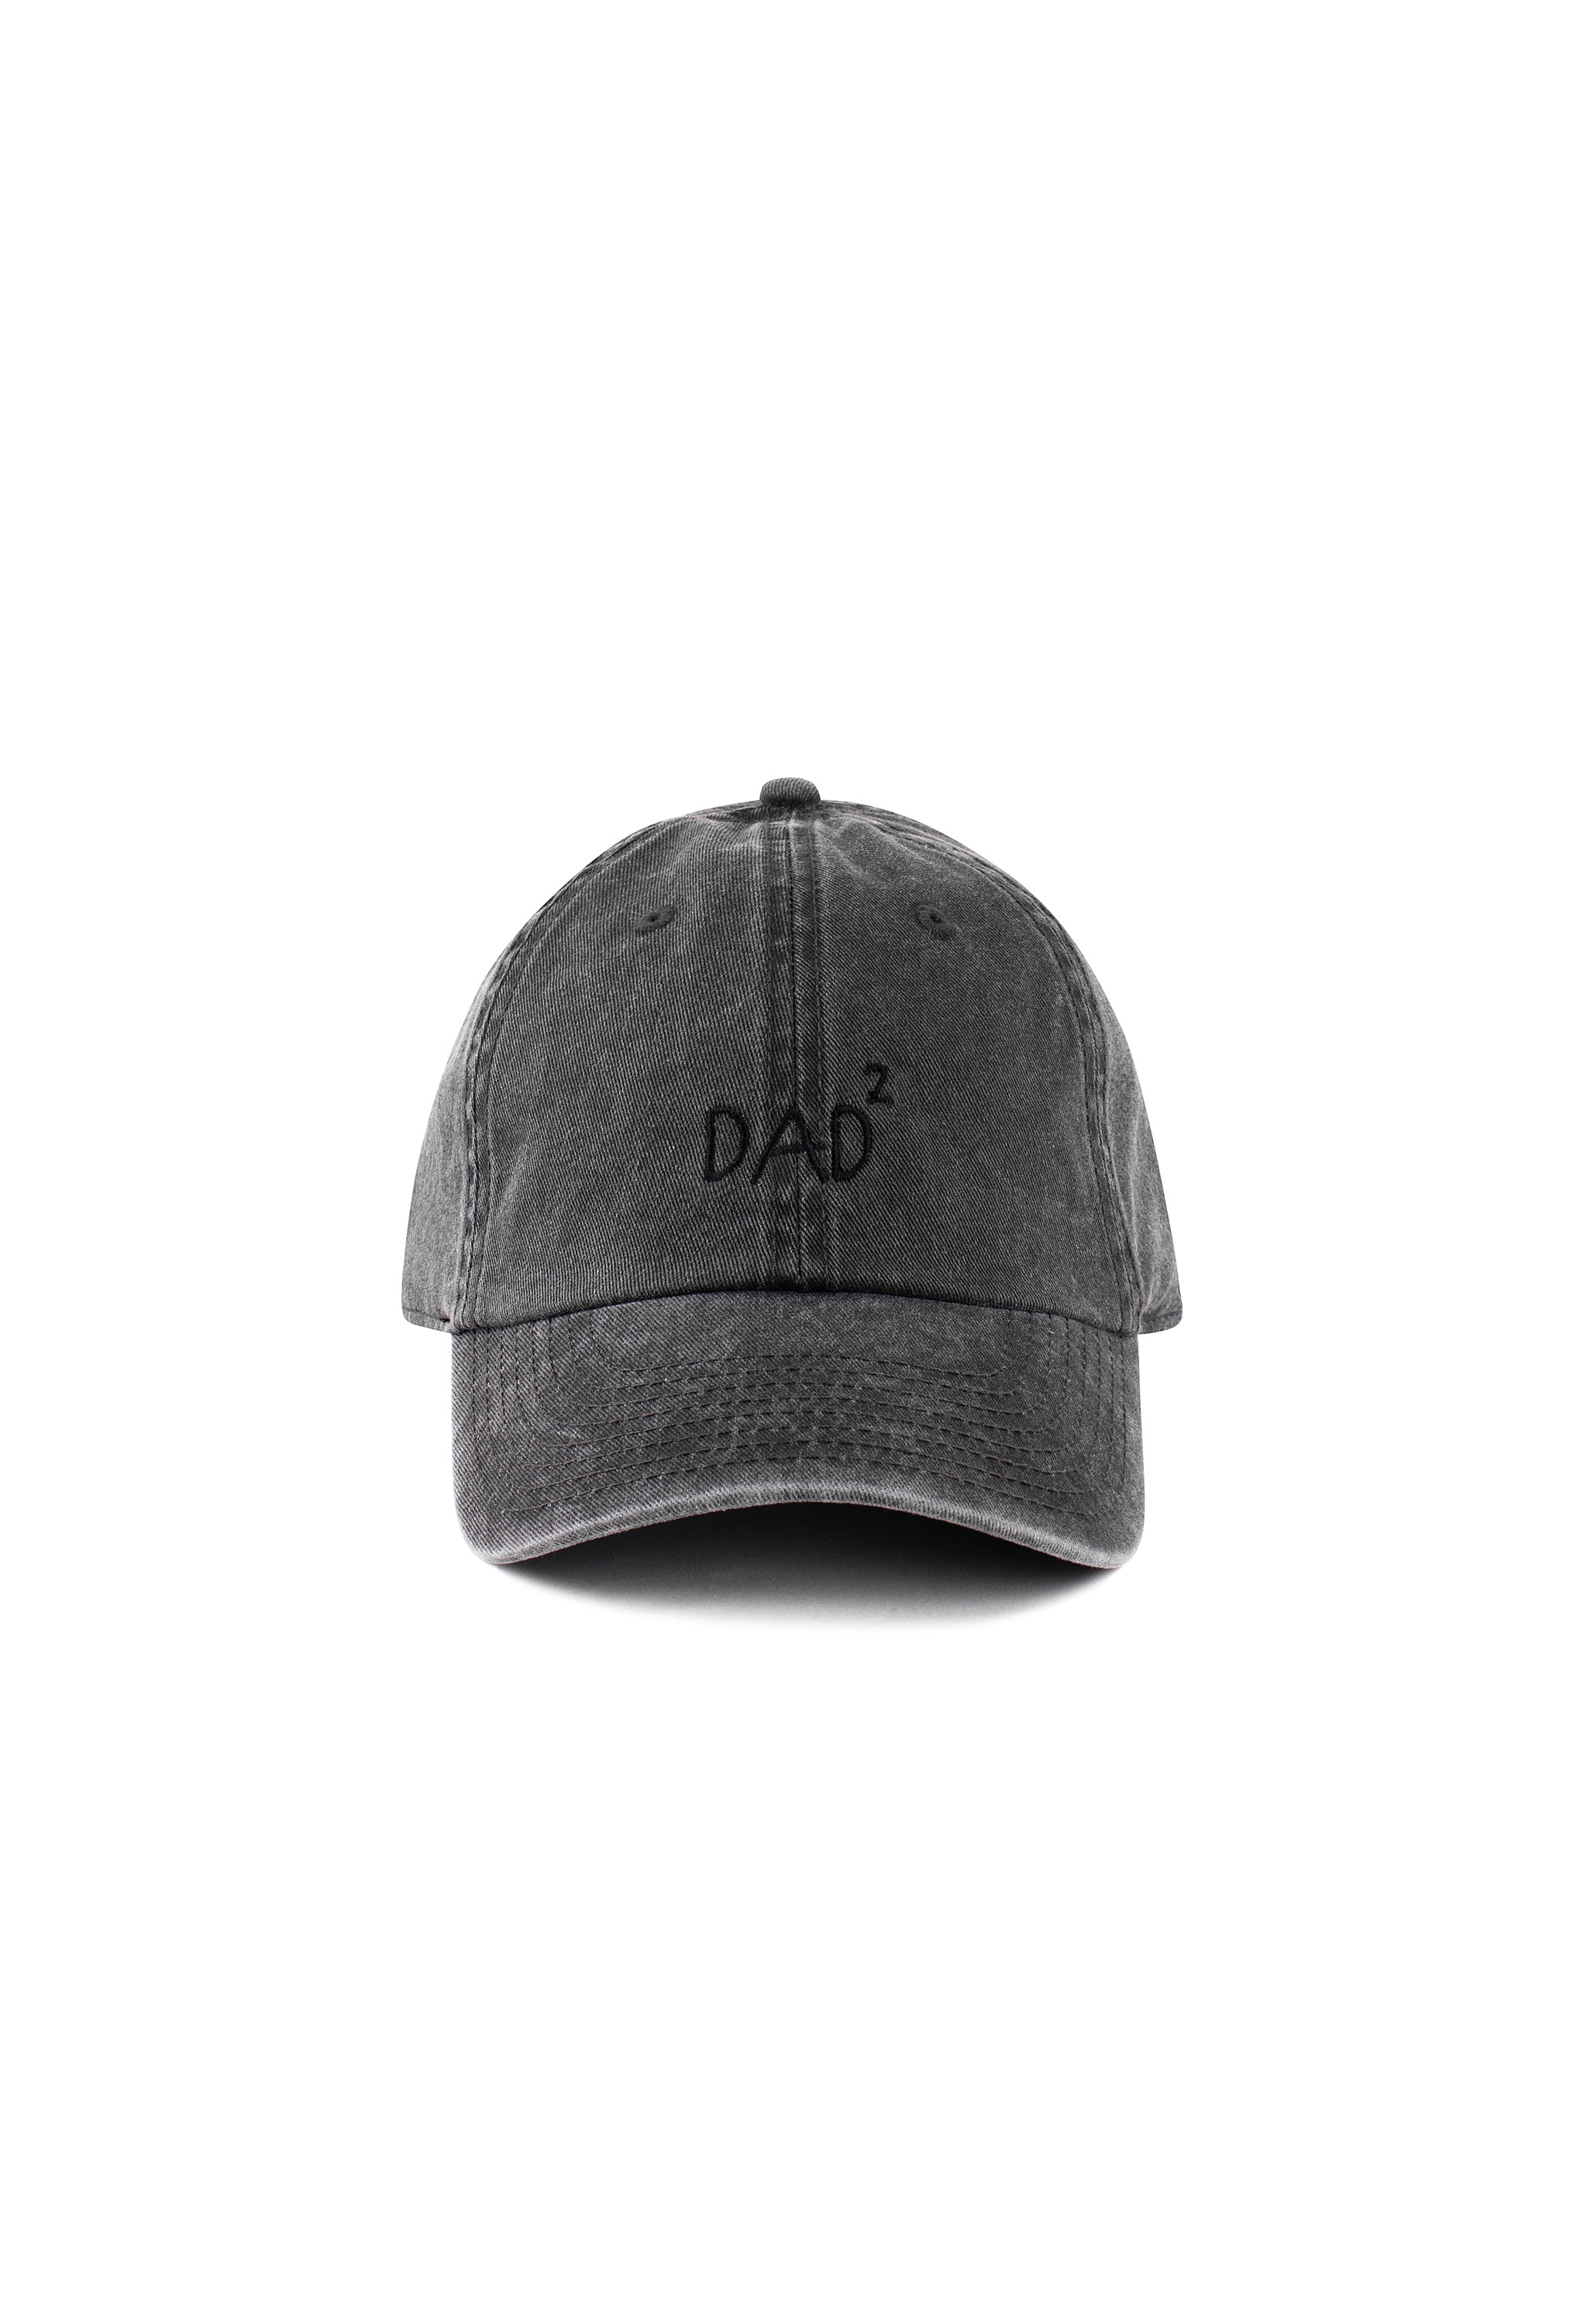 Dads' Cap